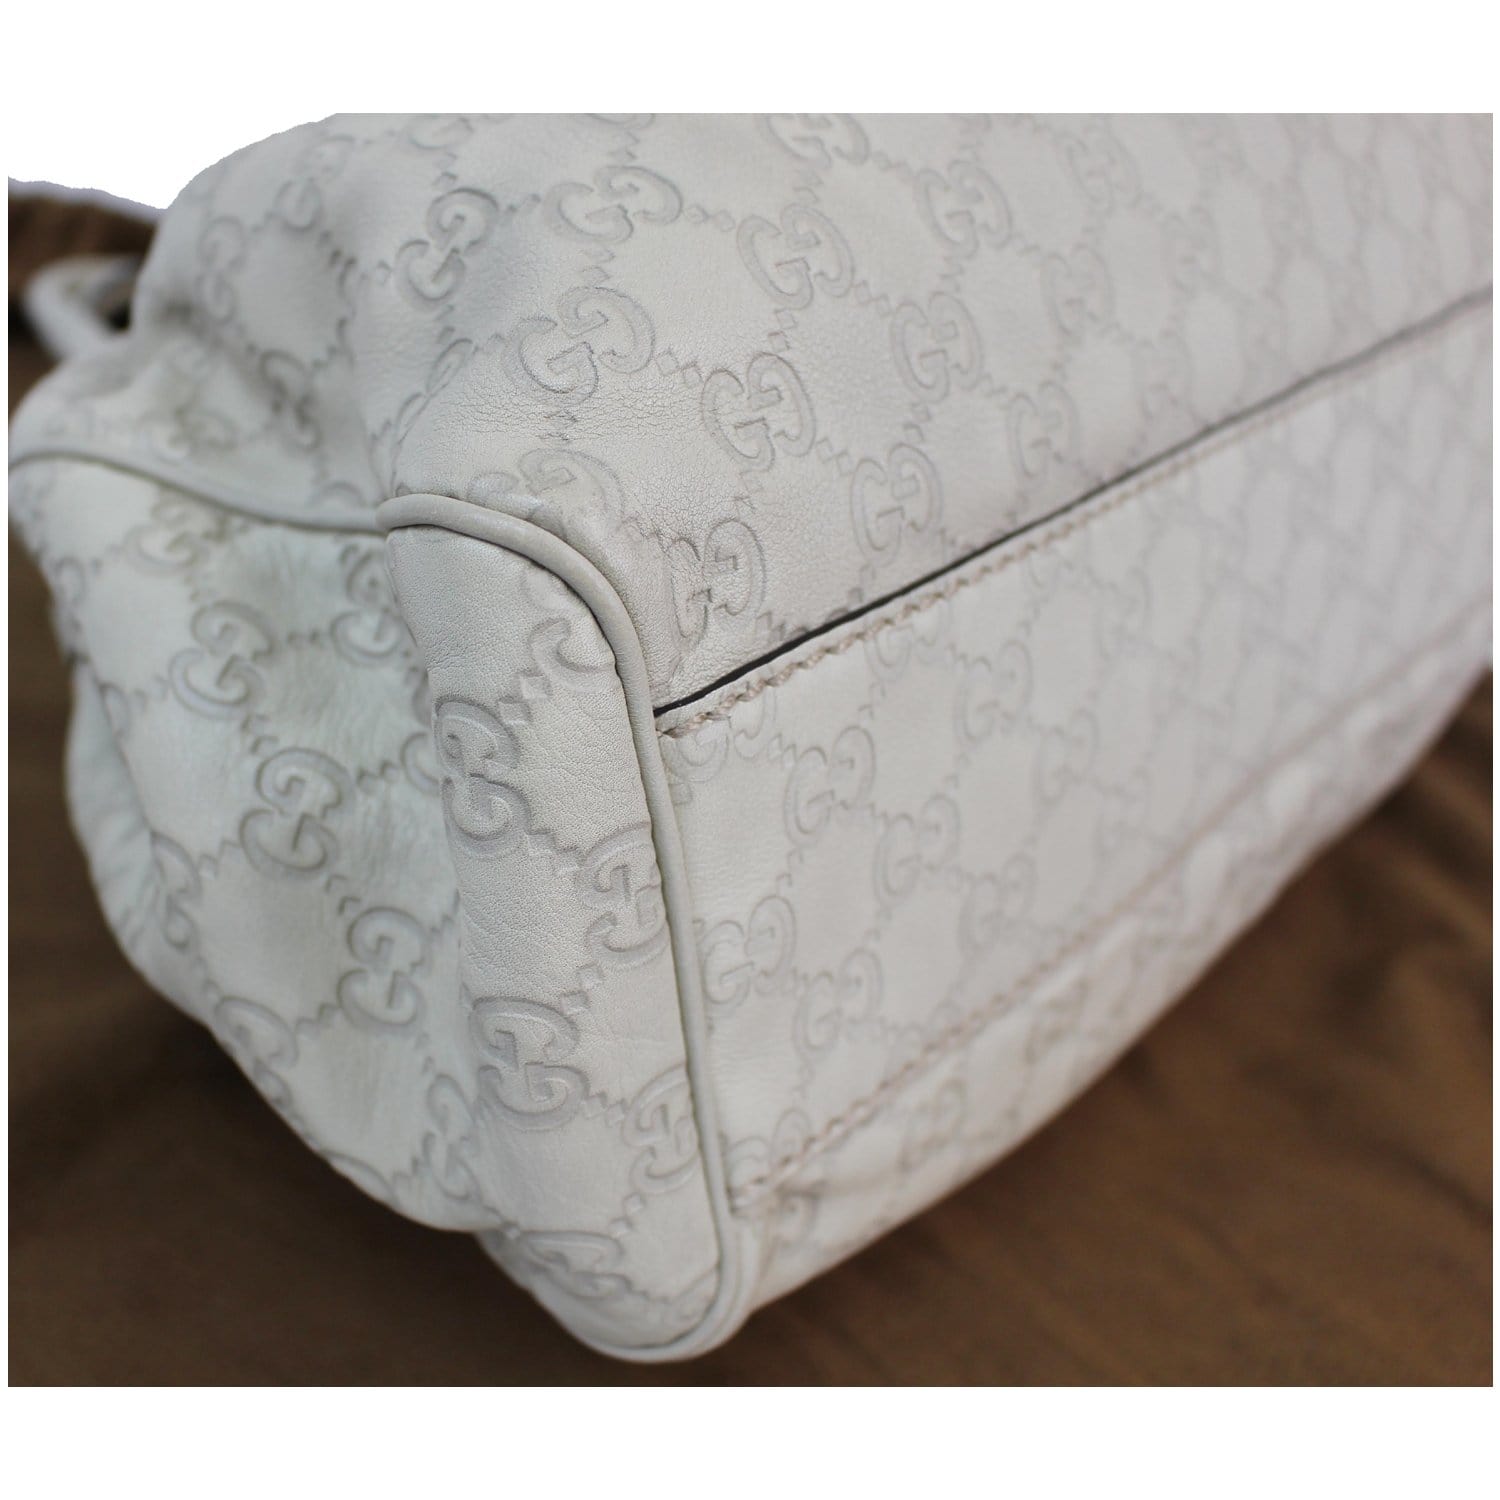 Authentic Gucci Guccissima Sukey Handbag Tote Interlocking G Leather Off  White